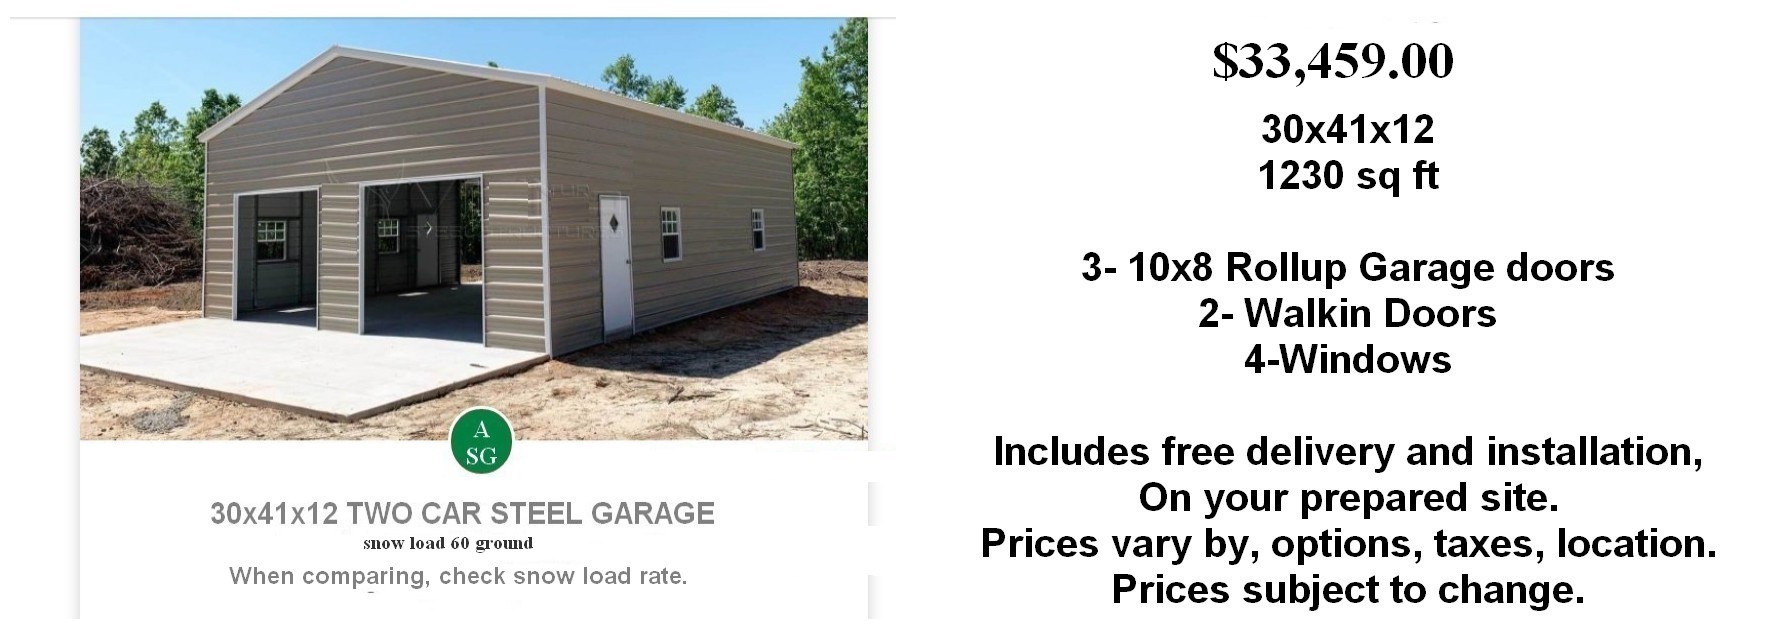 sample price of 30x41x12 garage